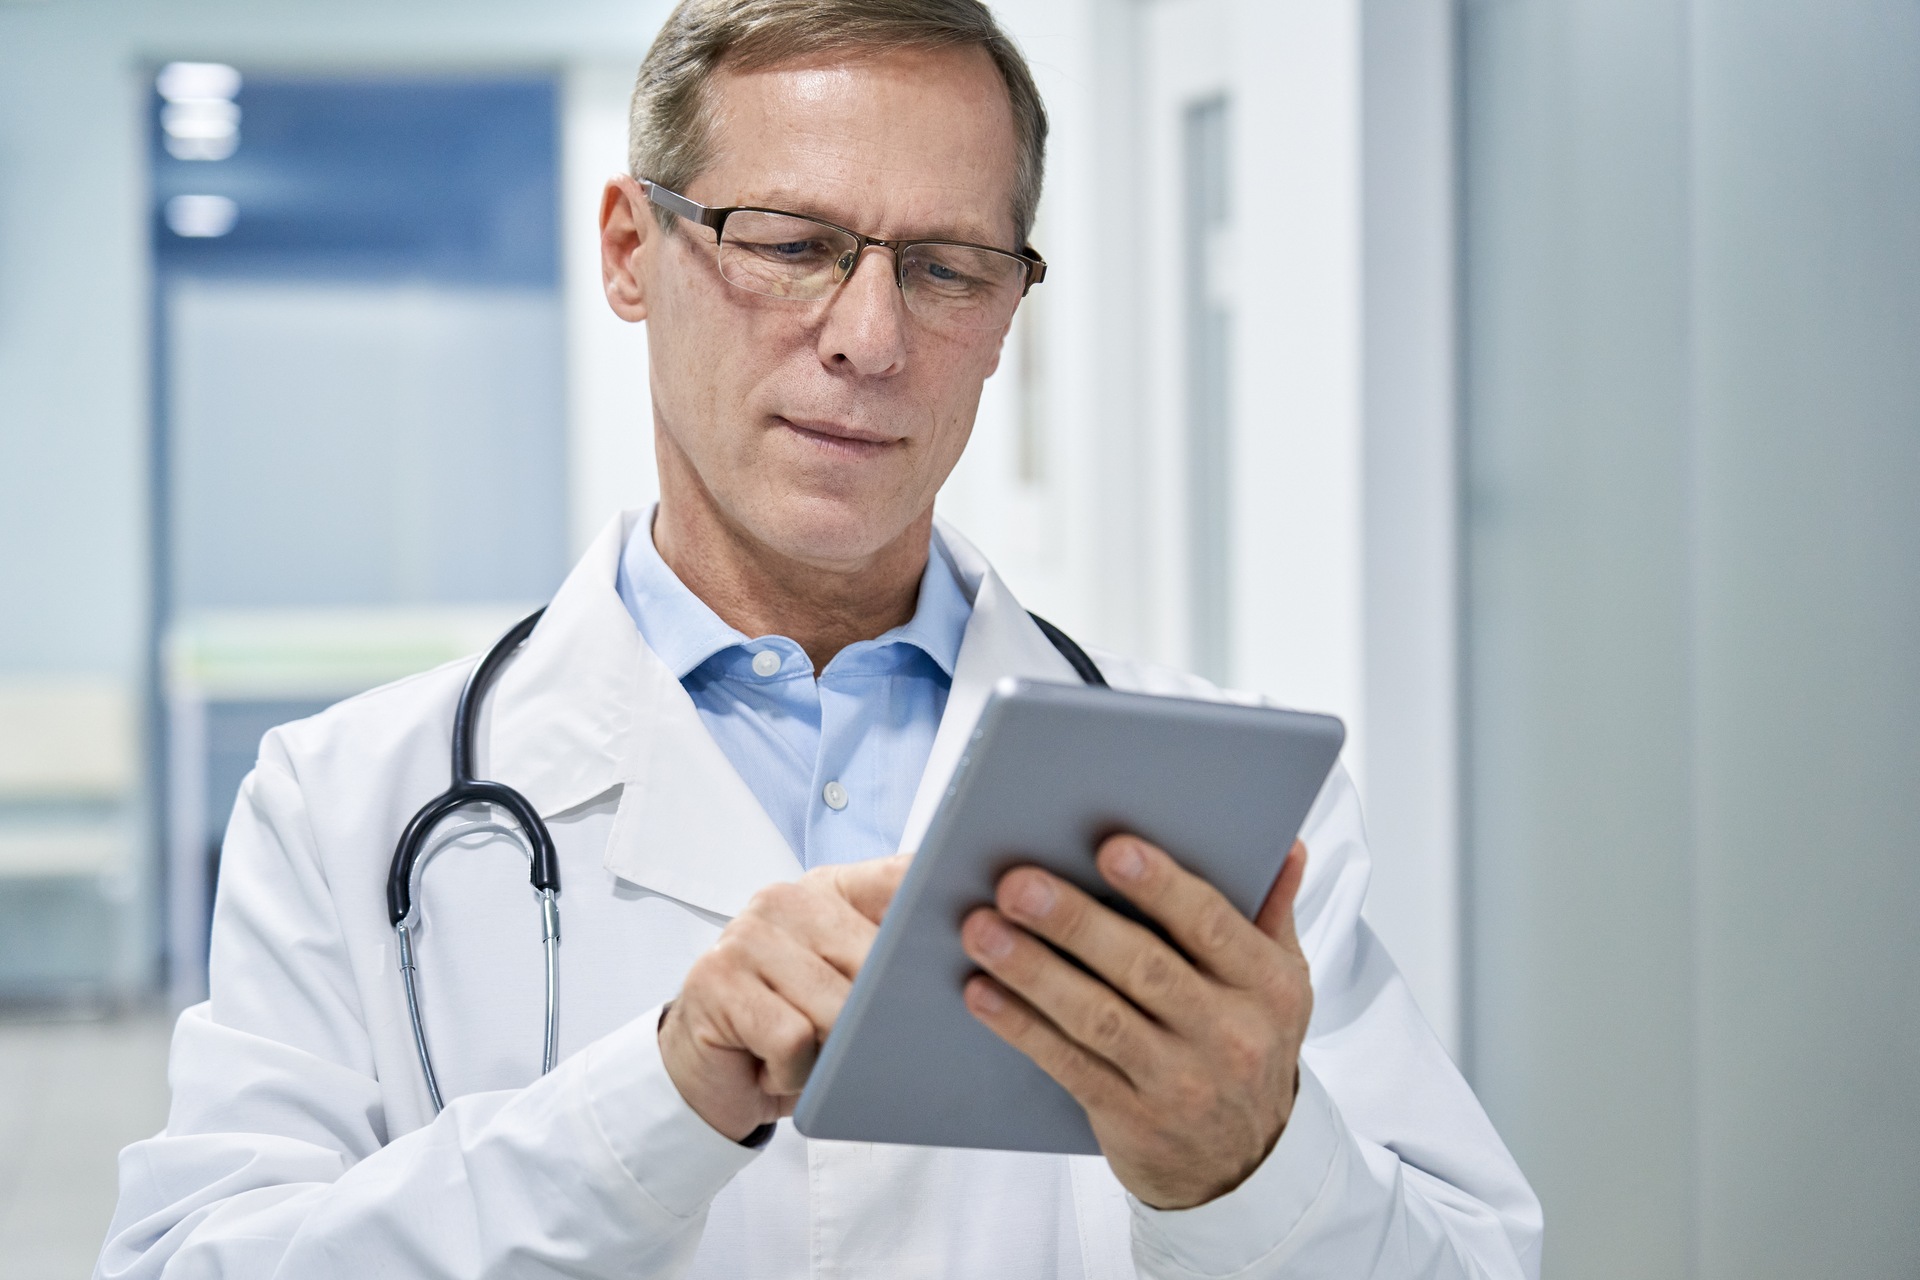 Veselības aprūpes digitalizācija: Šveices iedzīvotāji vēlas labu pievienoto vērtību no digitālās pārveides veselības aprūpē, lielāku lietotājam draudzīgumu, labāku diagnostiku un ārstēšanu, kā arī zemākas veselības aprūpes izmaksas.